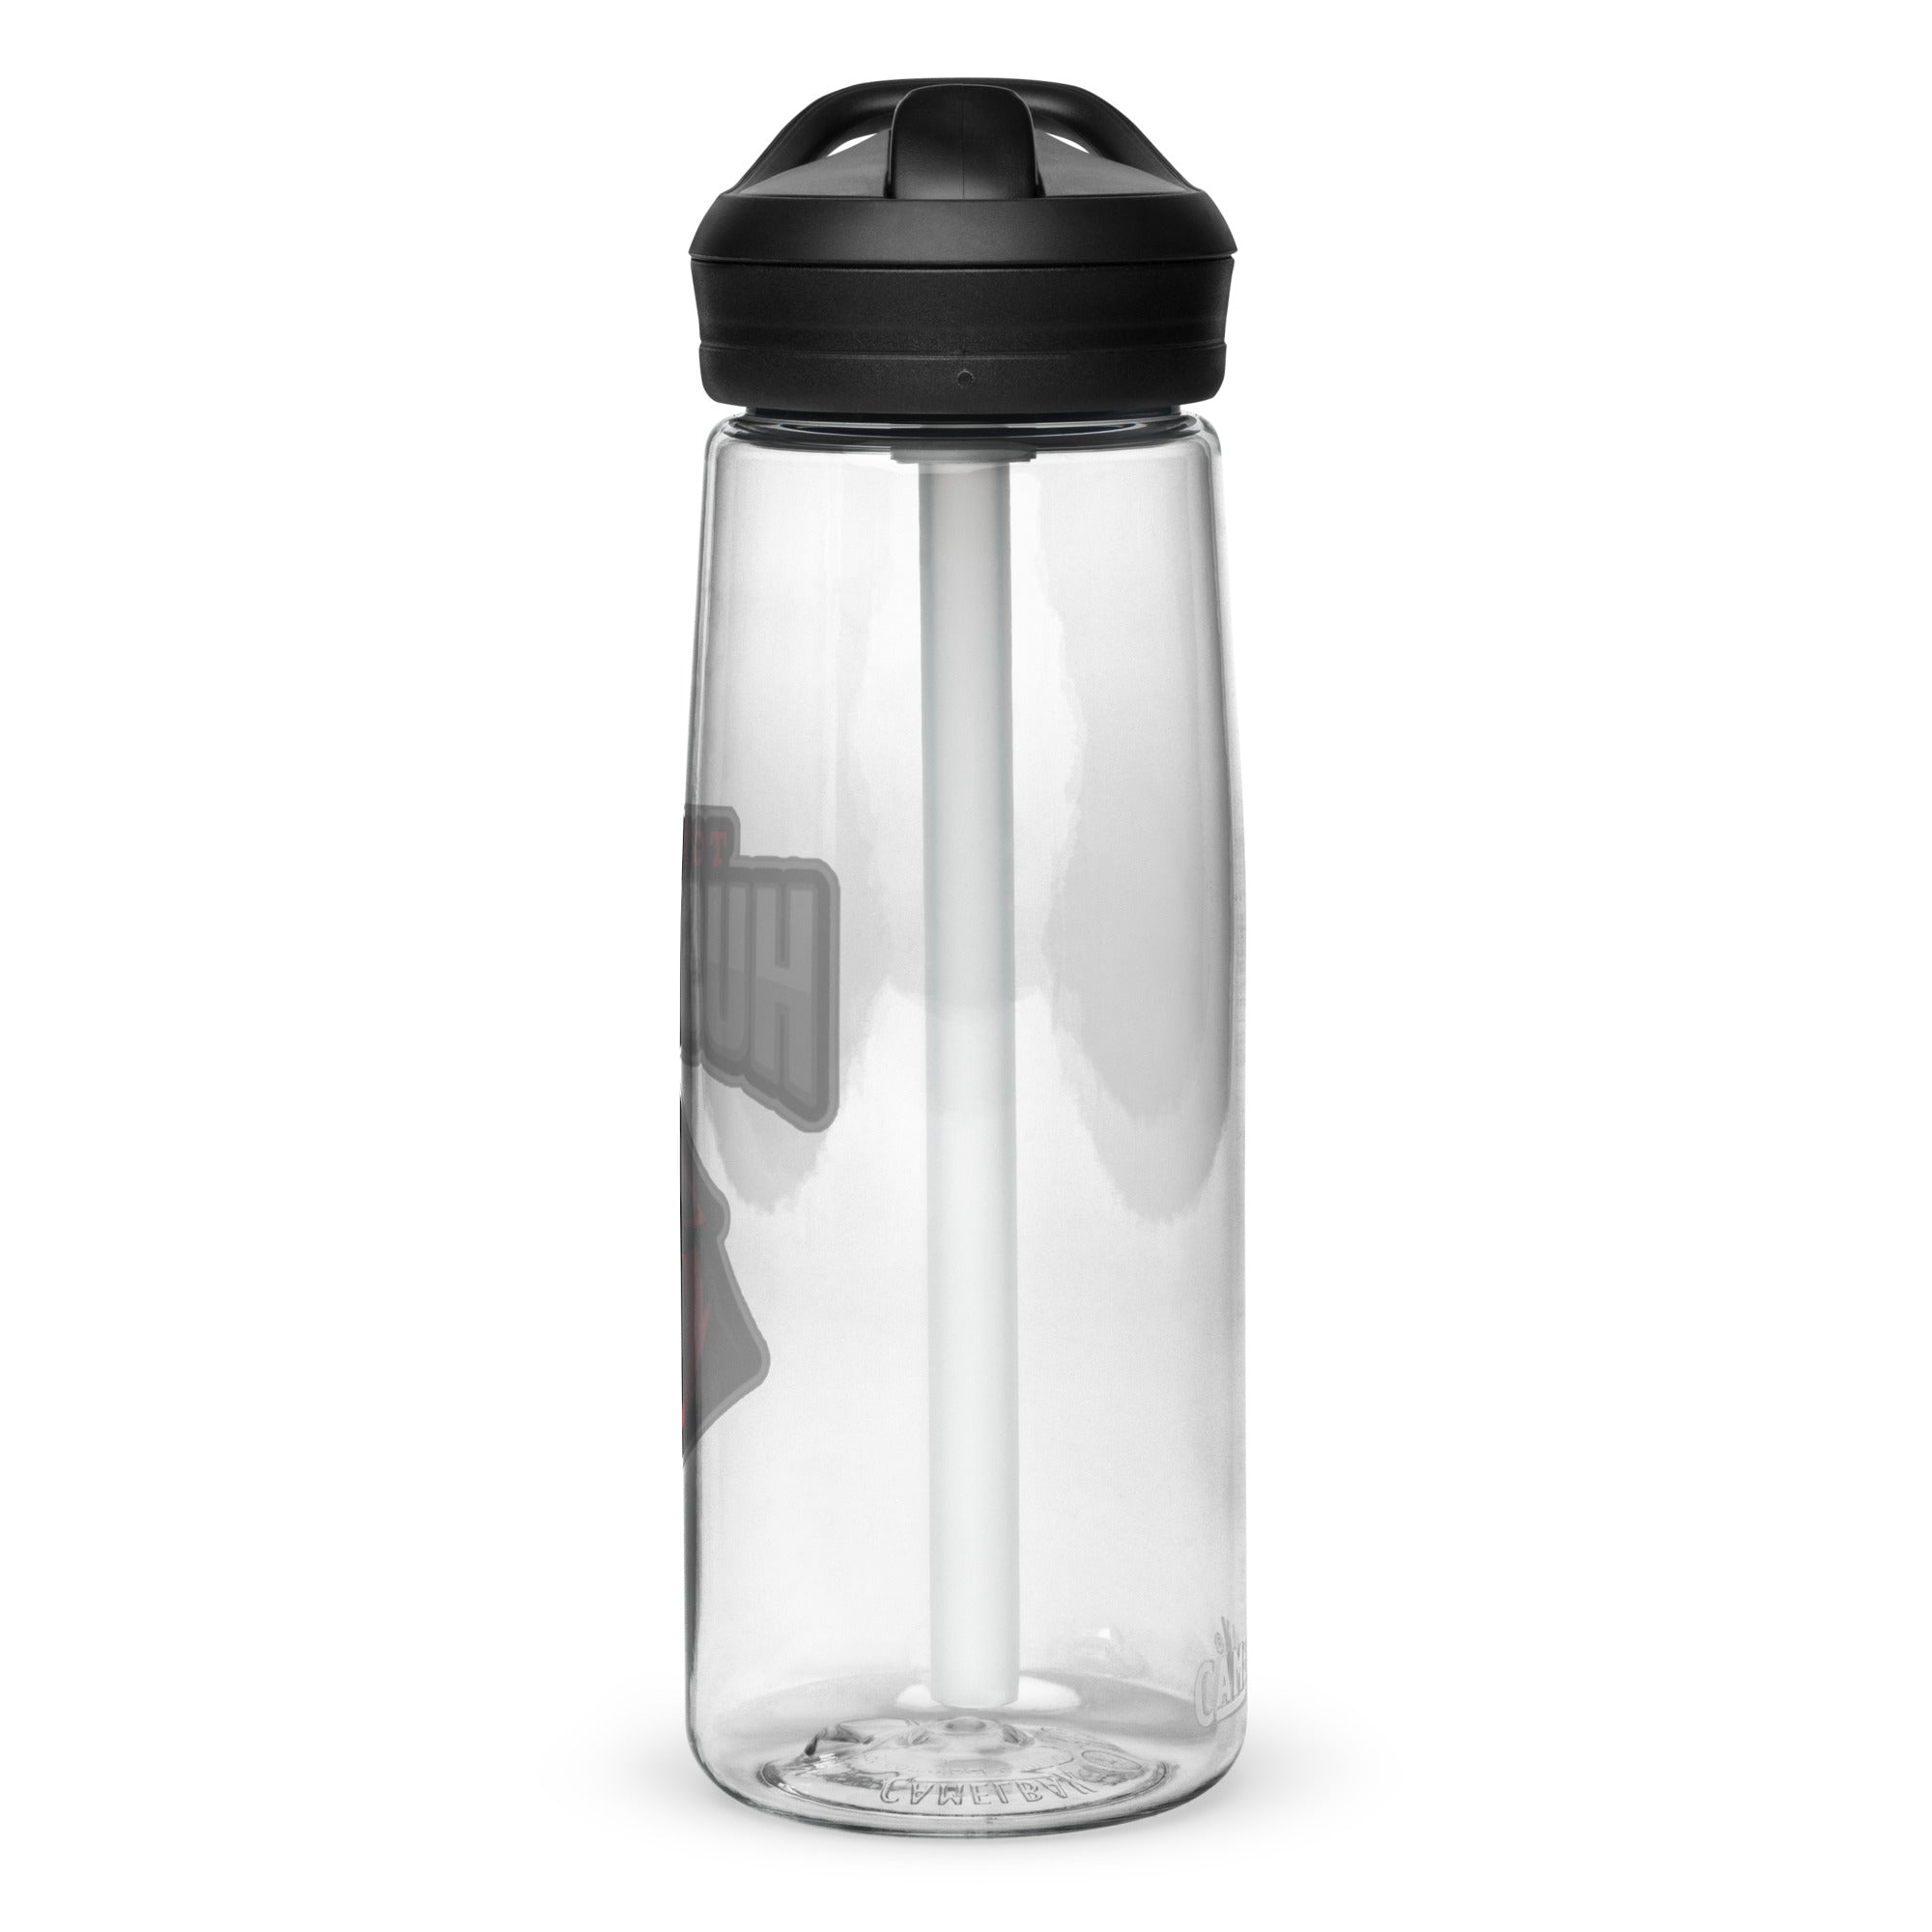 TH Sports water bottle